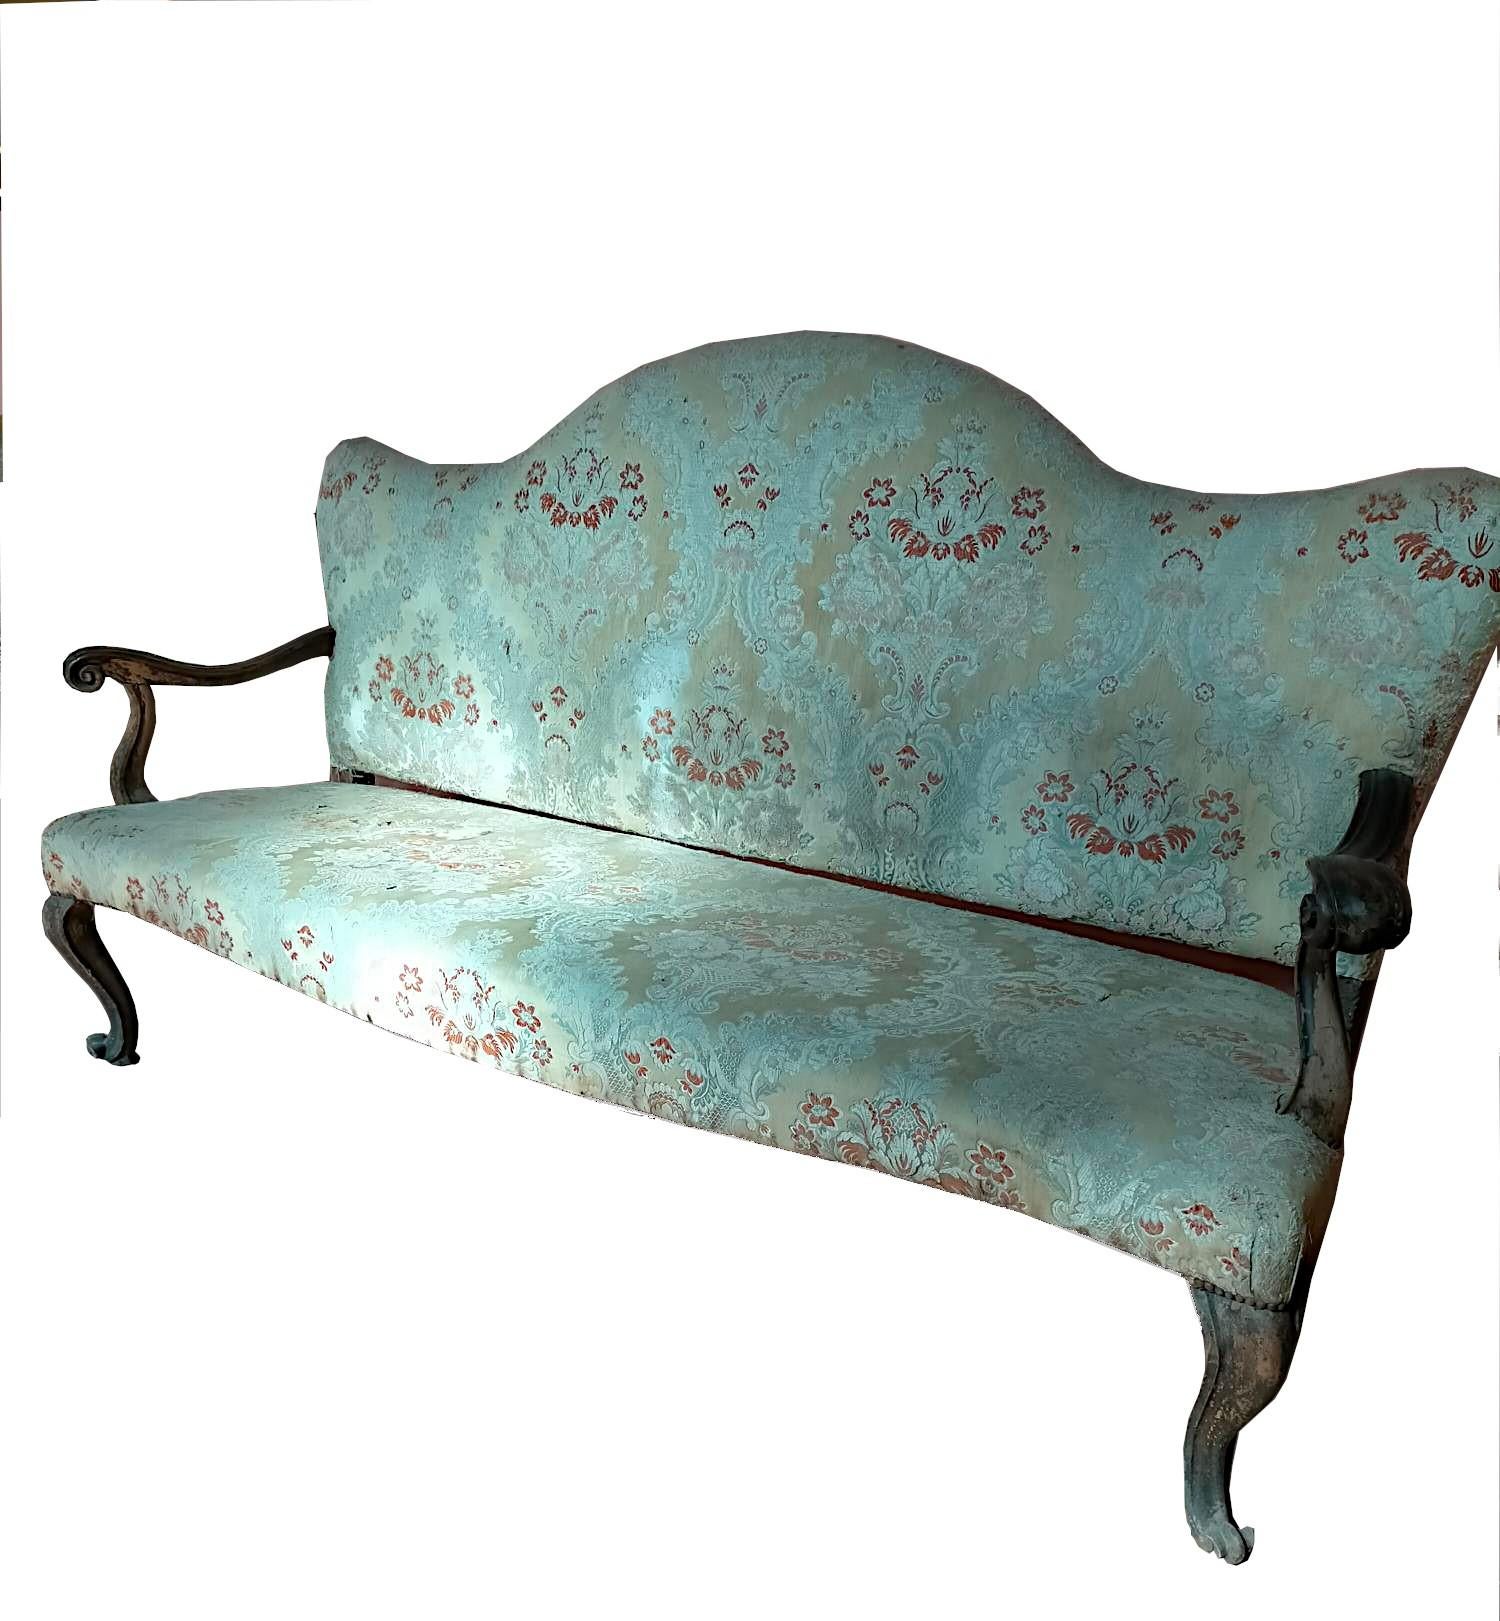 Sofa Louis XV
Epoche: 18. Jahrhundert

Sofa Louis XV, ein elegantes Sofa aus der Kunst und Raffinesse des 18. Jahrhunderts, aus Nussbaumholz, das dem Raum eine Aura von Adel und Wärme verleiht. 

Dieses Sofa ist ein authentisches Stück aus der Zeit,